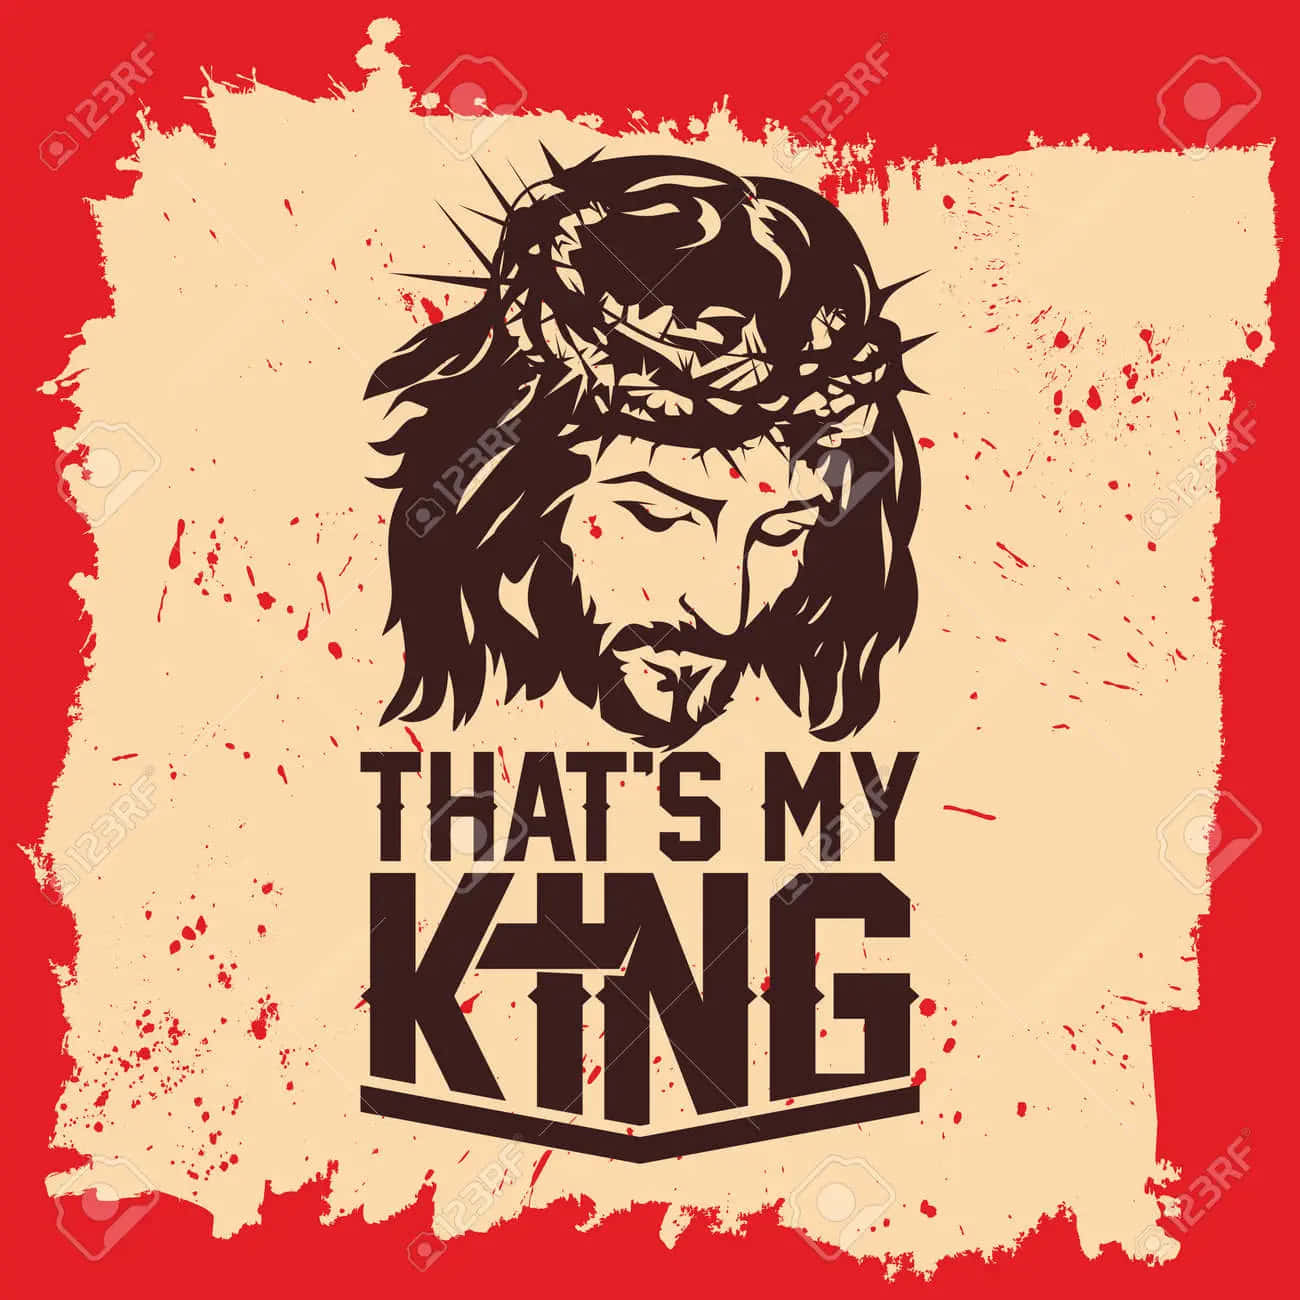 Jesus er konge - Stol på hans plan Wallpaper